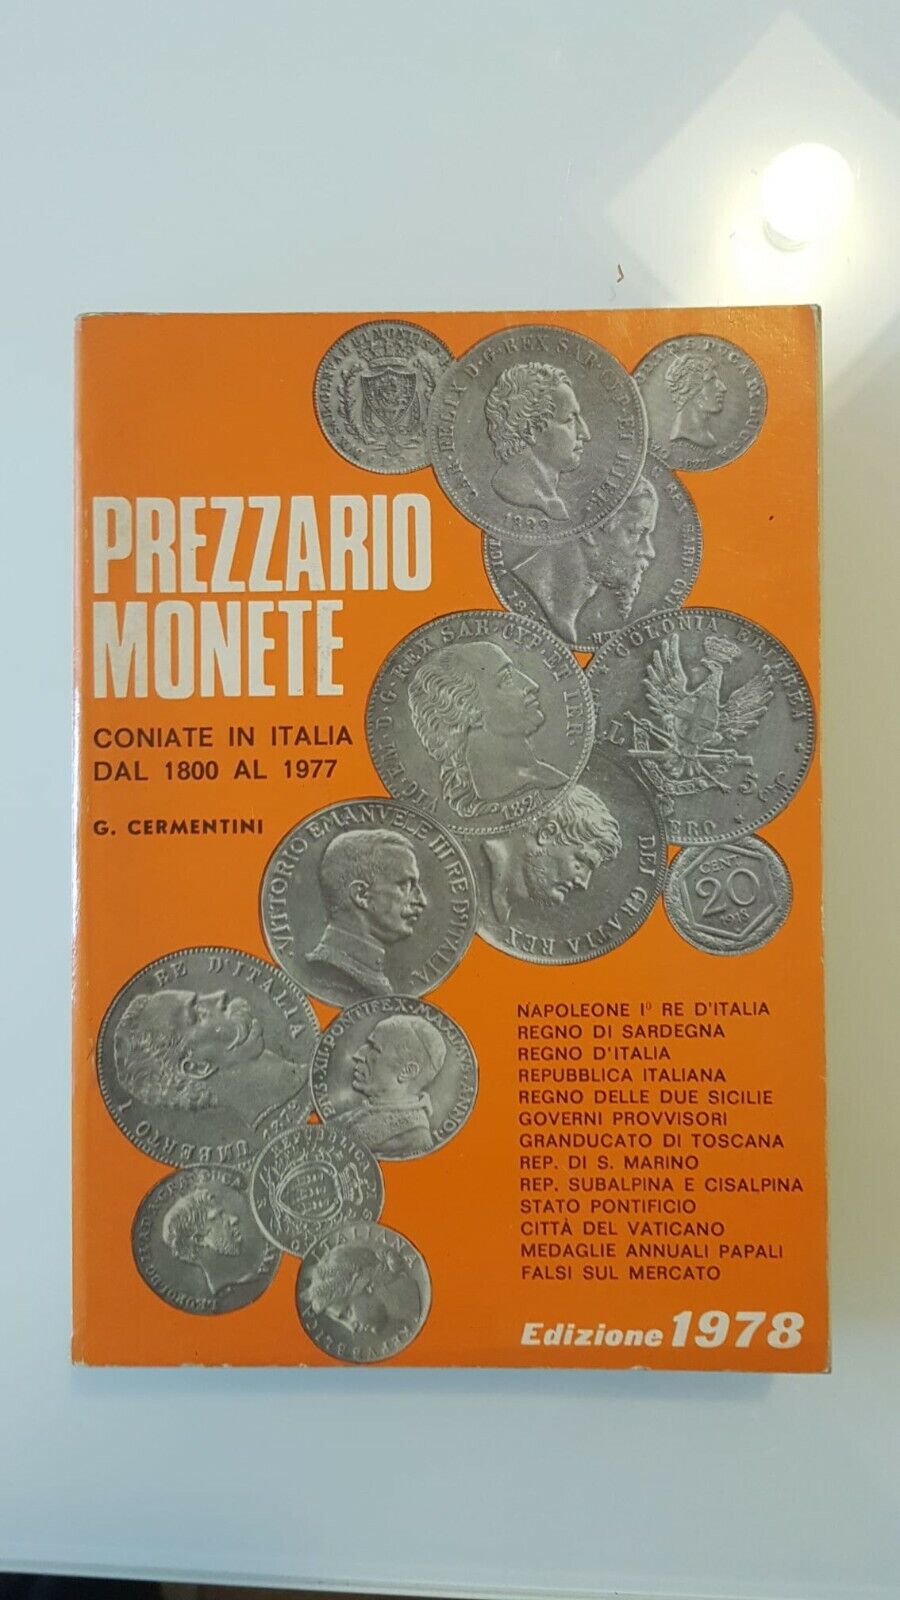 Liste des prix des monnaies frappées en Italie de 1800 à 1977 - G. Cermentini - éd. 1978